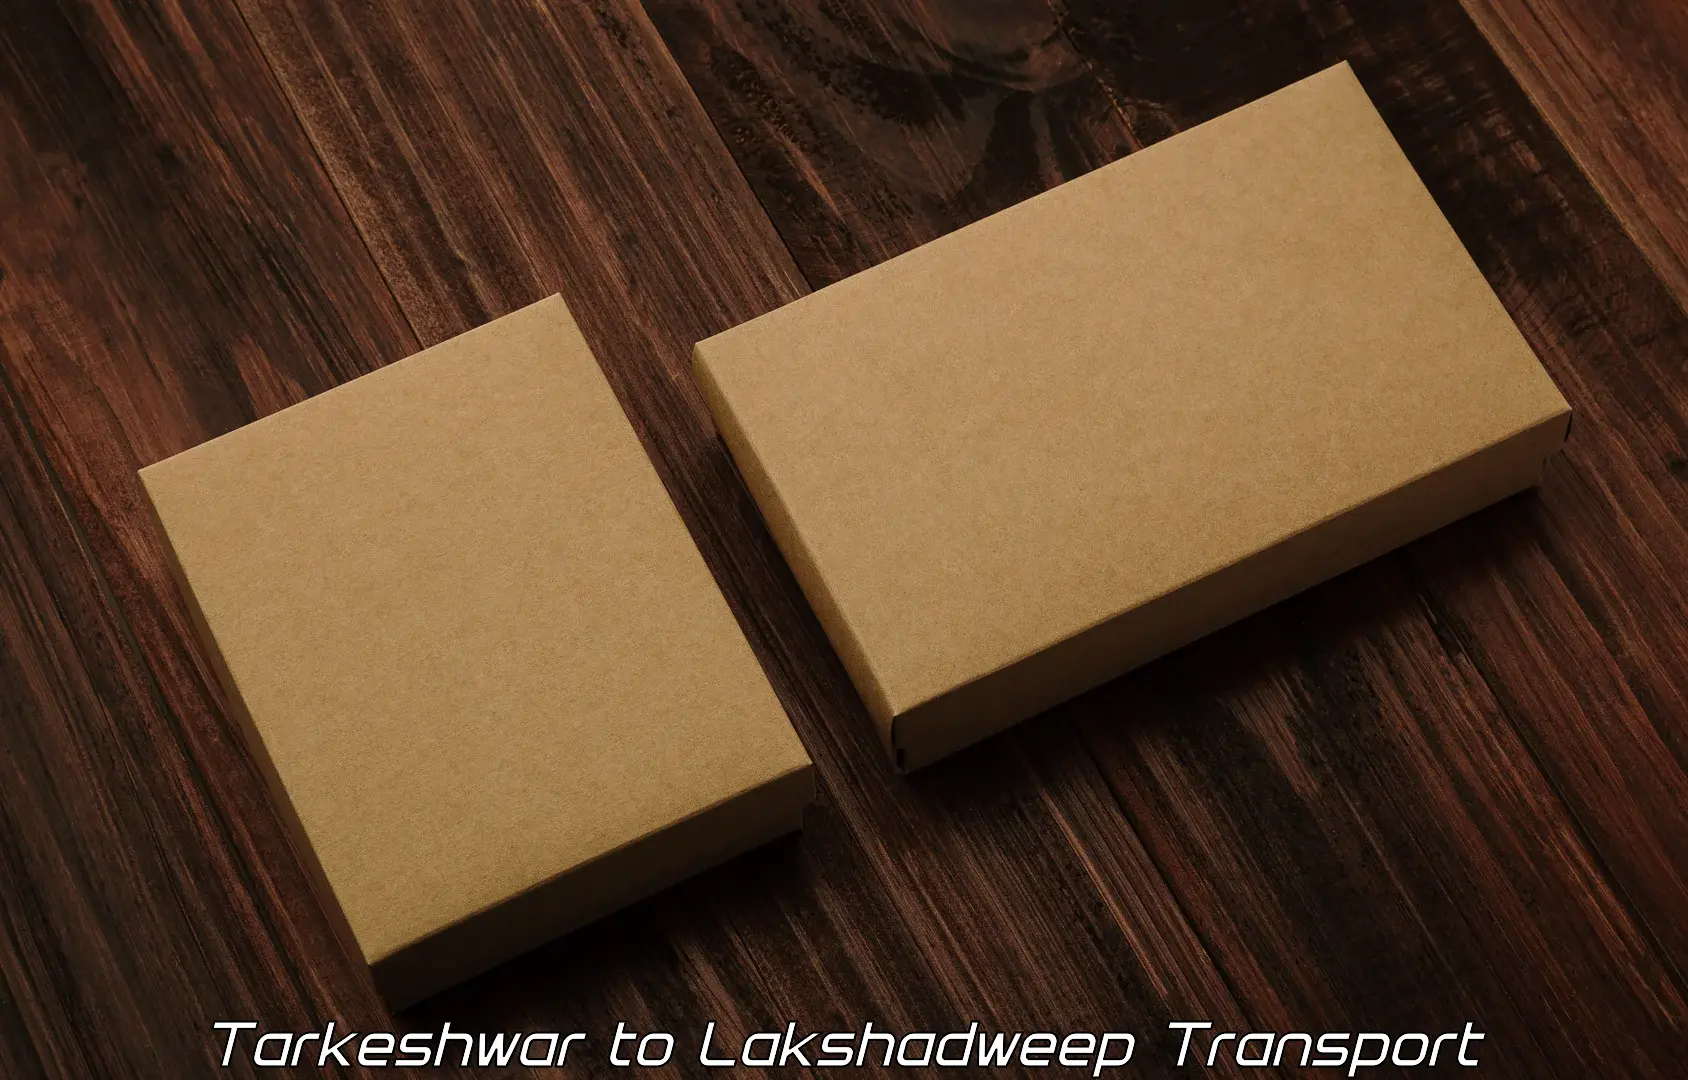 Transport in sharing Tarkeshwar to Lakshadweep